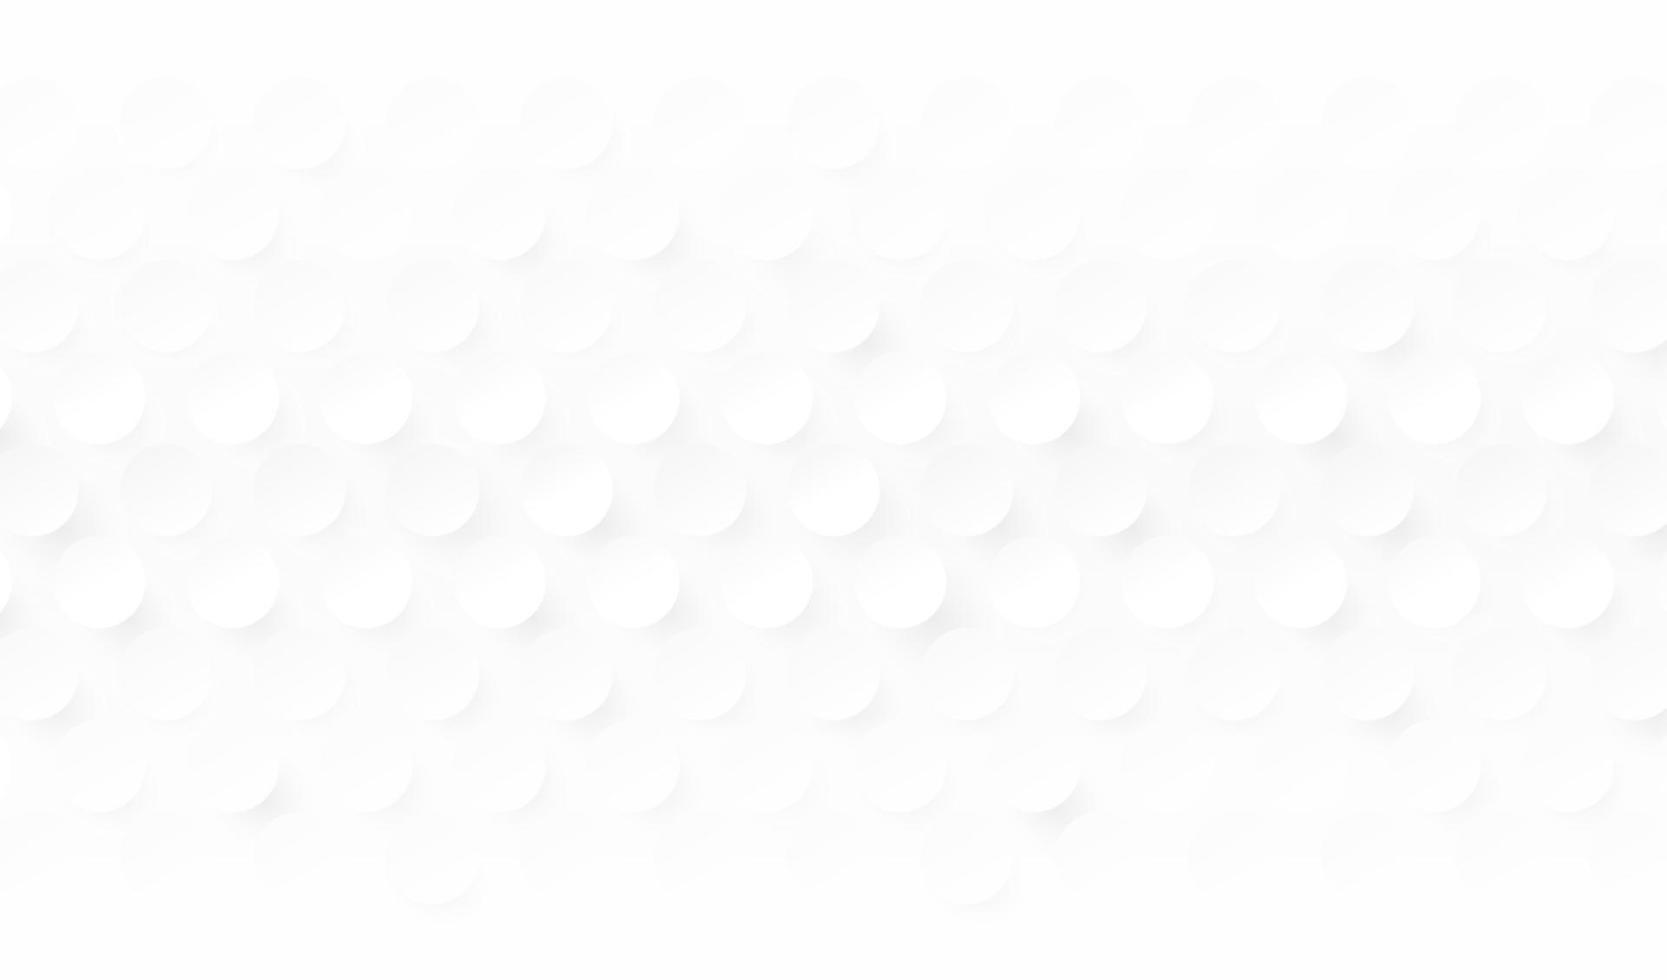 motif de cercle abstrait blanc et gris clair avec fond 3d d'ombre. conception de modèle de points d'argent futuriste moderne. concept de texture de formes géométriques simples minimales et propres. illustration vectorielle vecteur